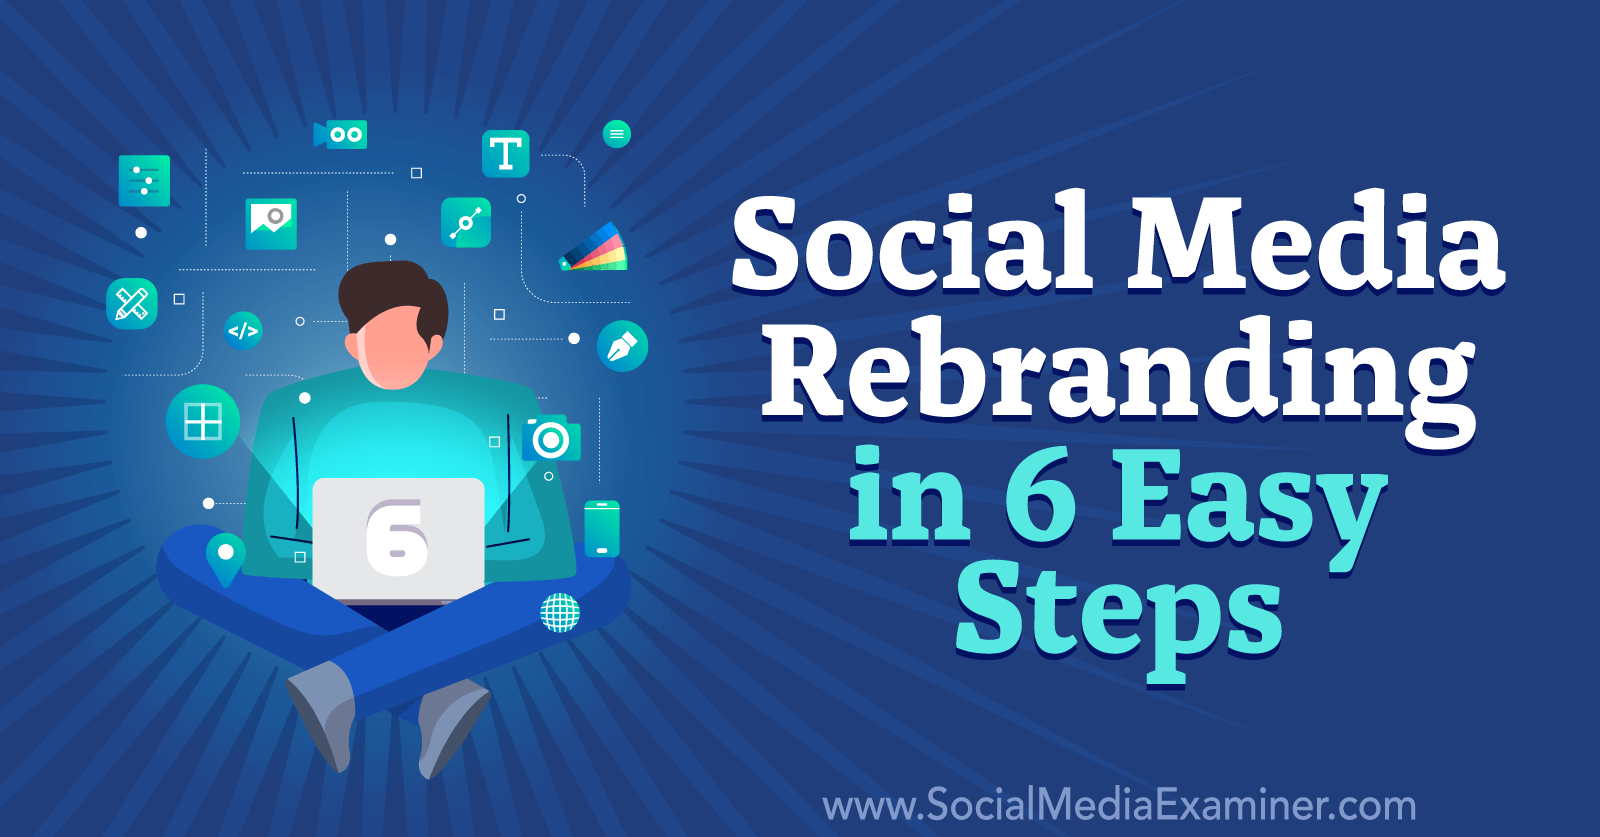 Social Media Rebranding in 6 Easy Steps by Corinna Keefe on Social Media Examiner.